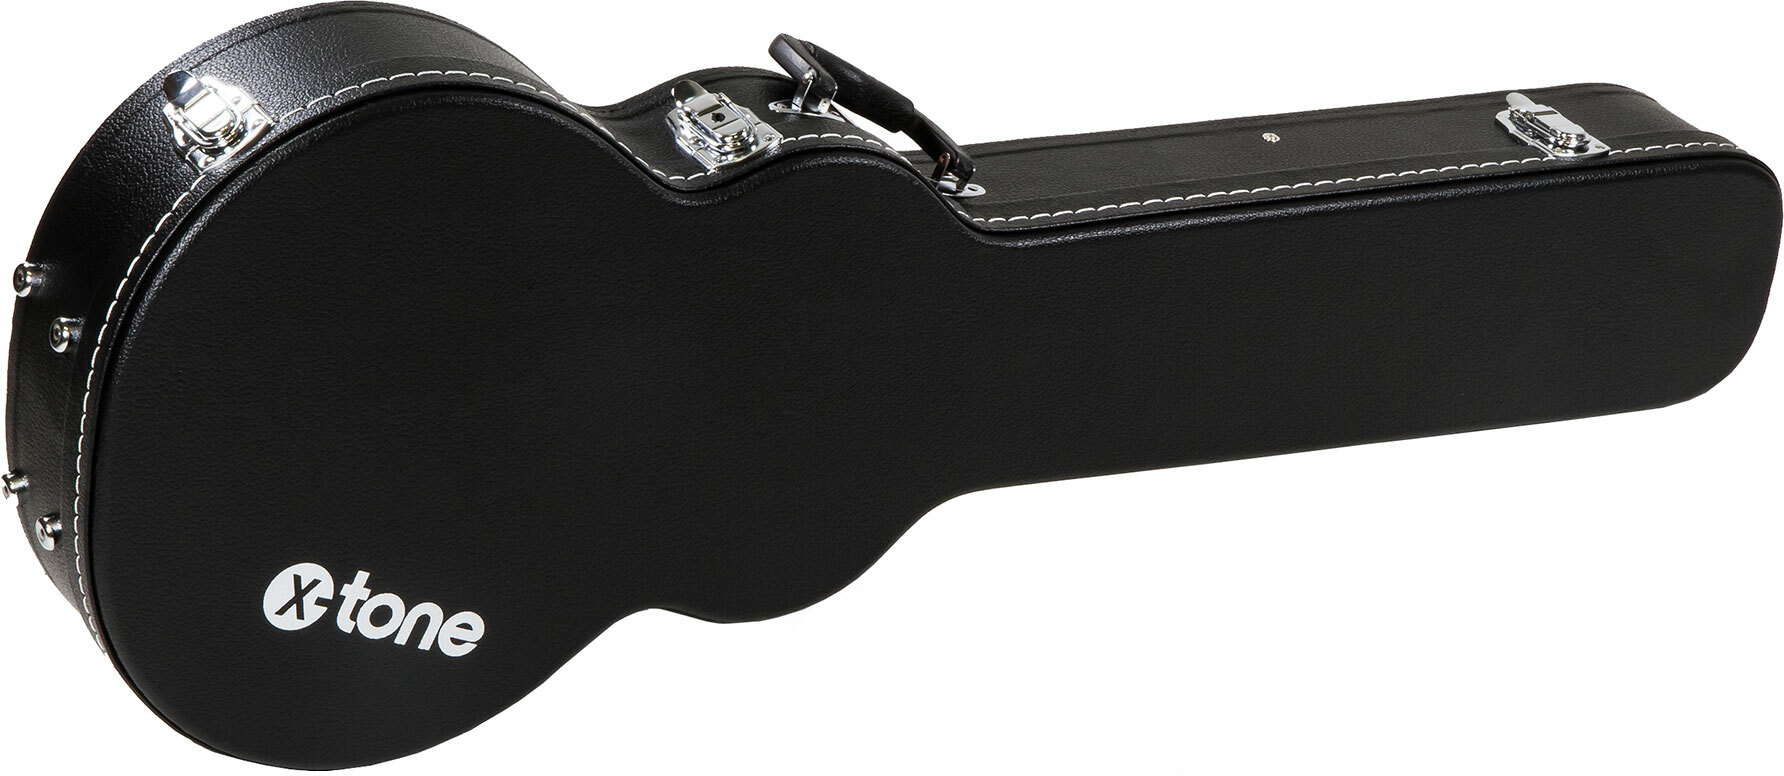 X-tone 1502 Standard Electrique Les Paul En Forme Black - Maleta para guitarra eléctrica - Main picture